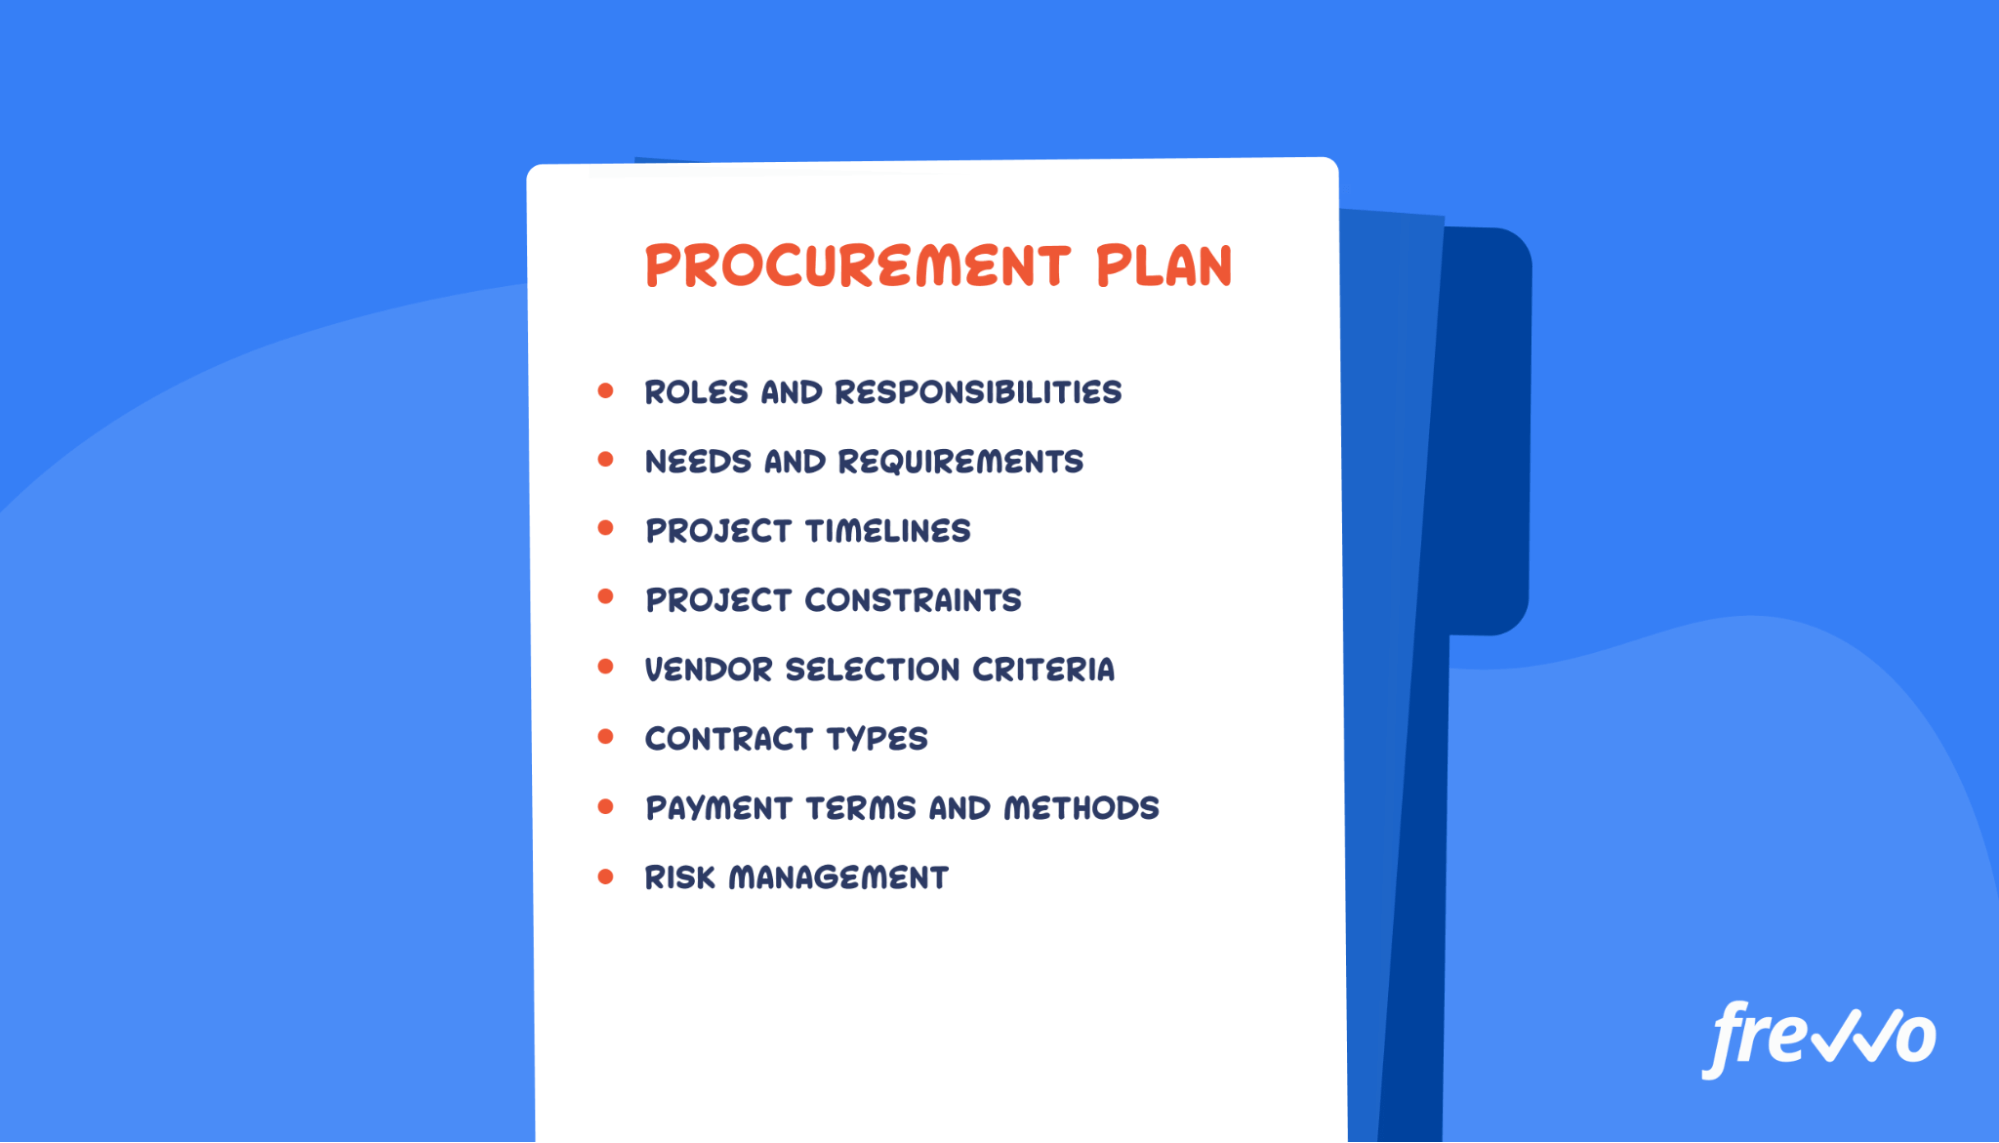 Components of a procurement plan